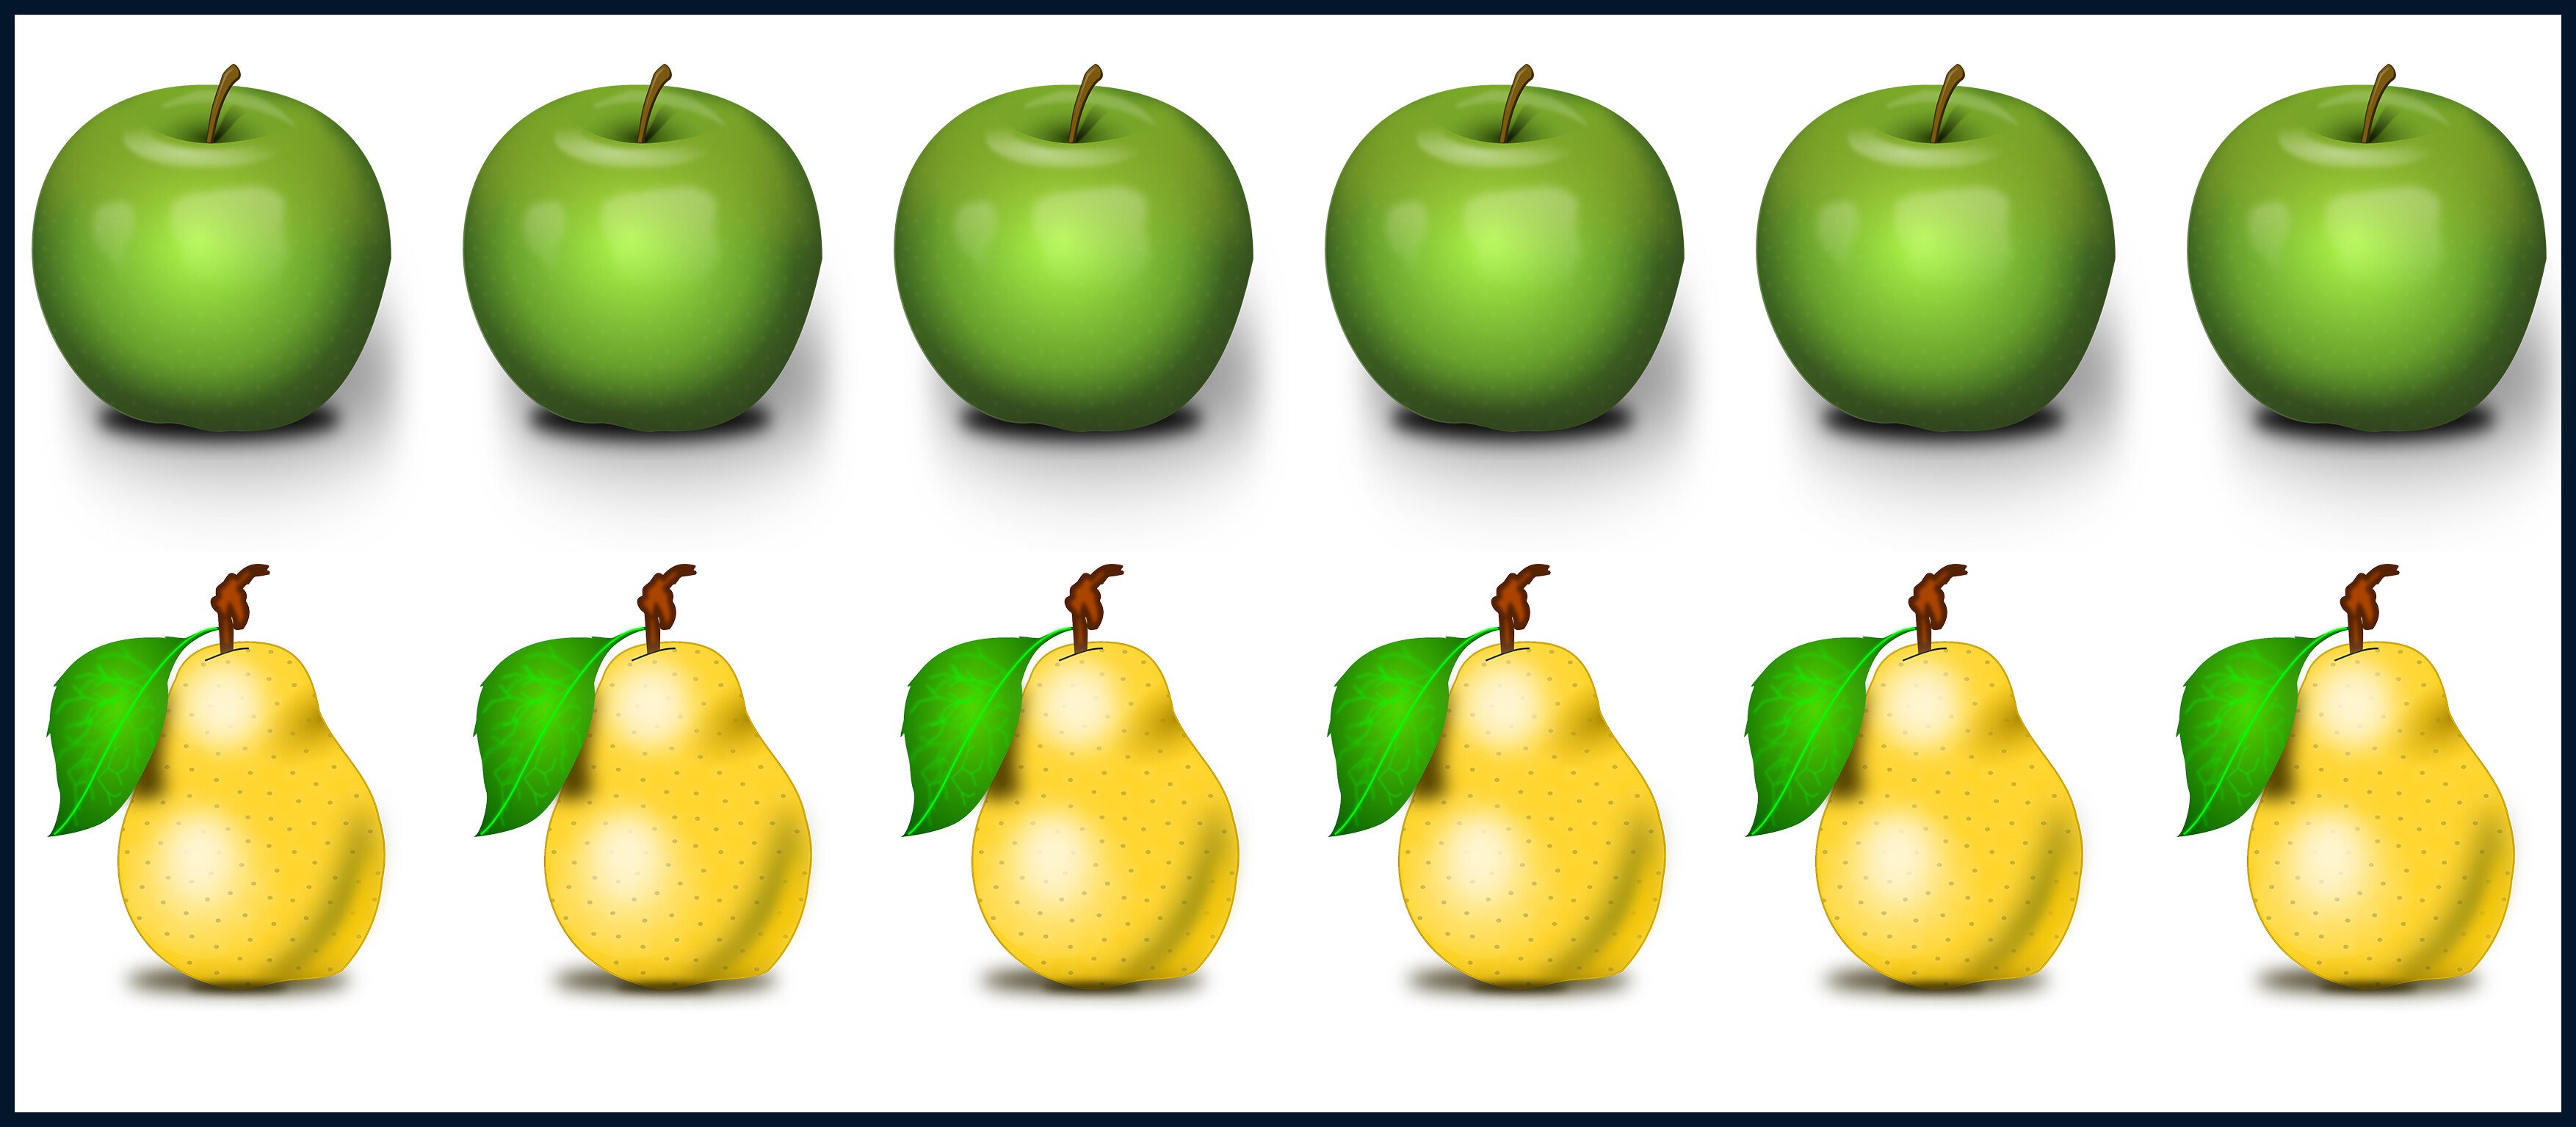 Решаем примеры уравниваем фрукты